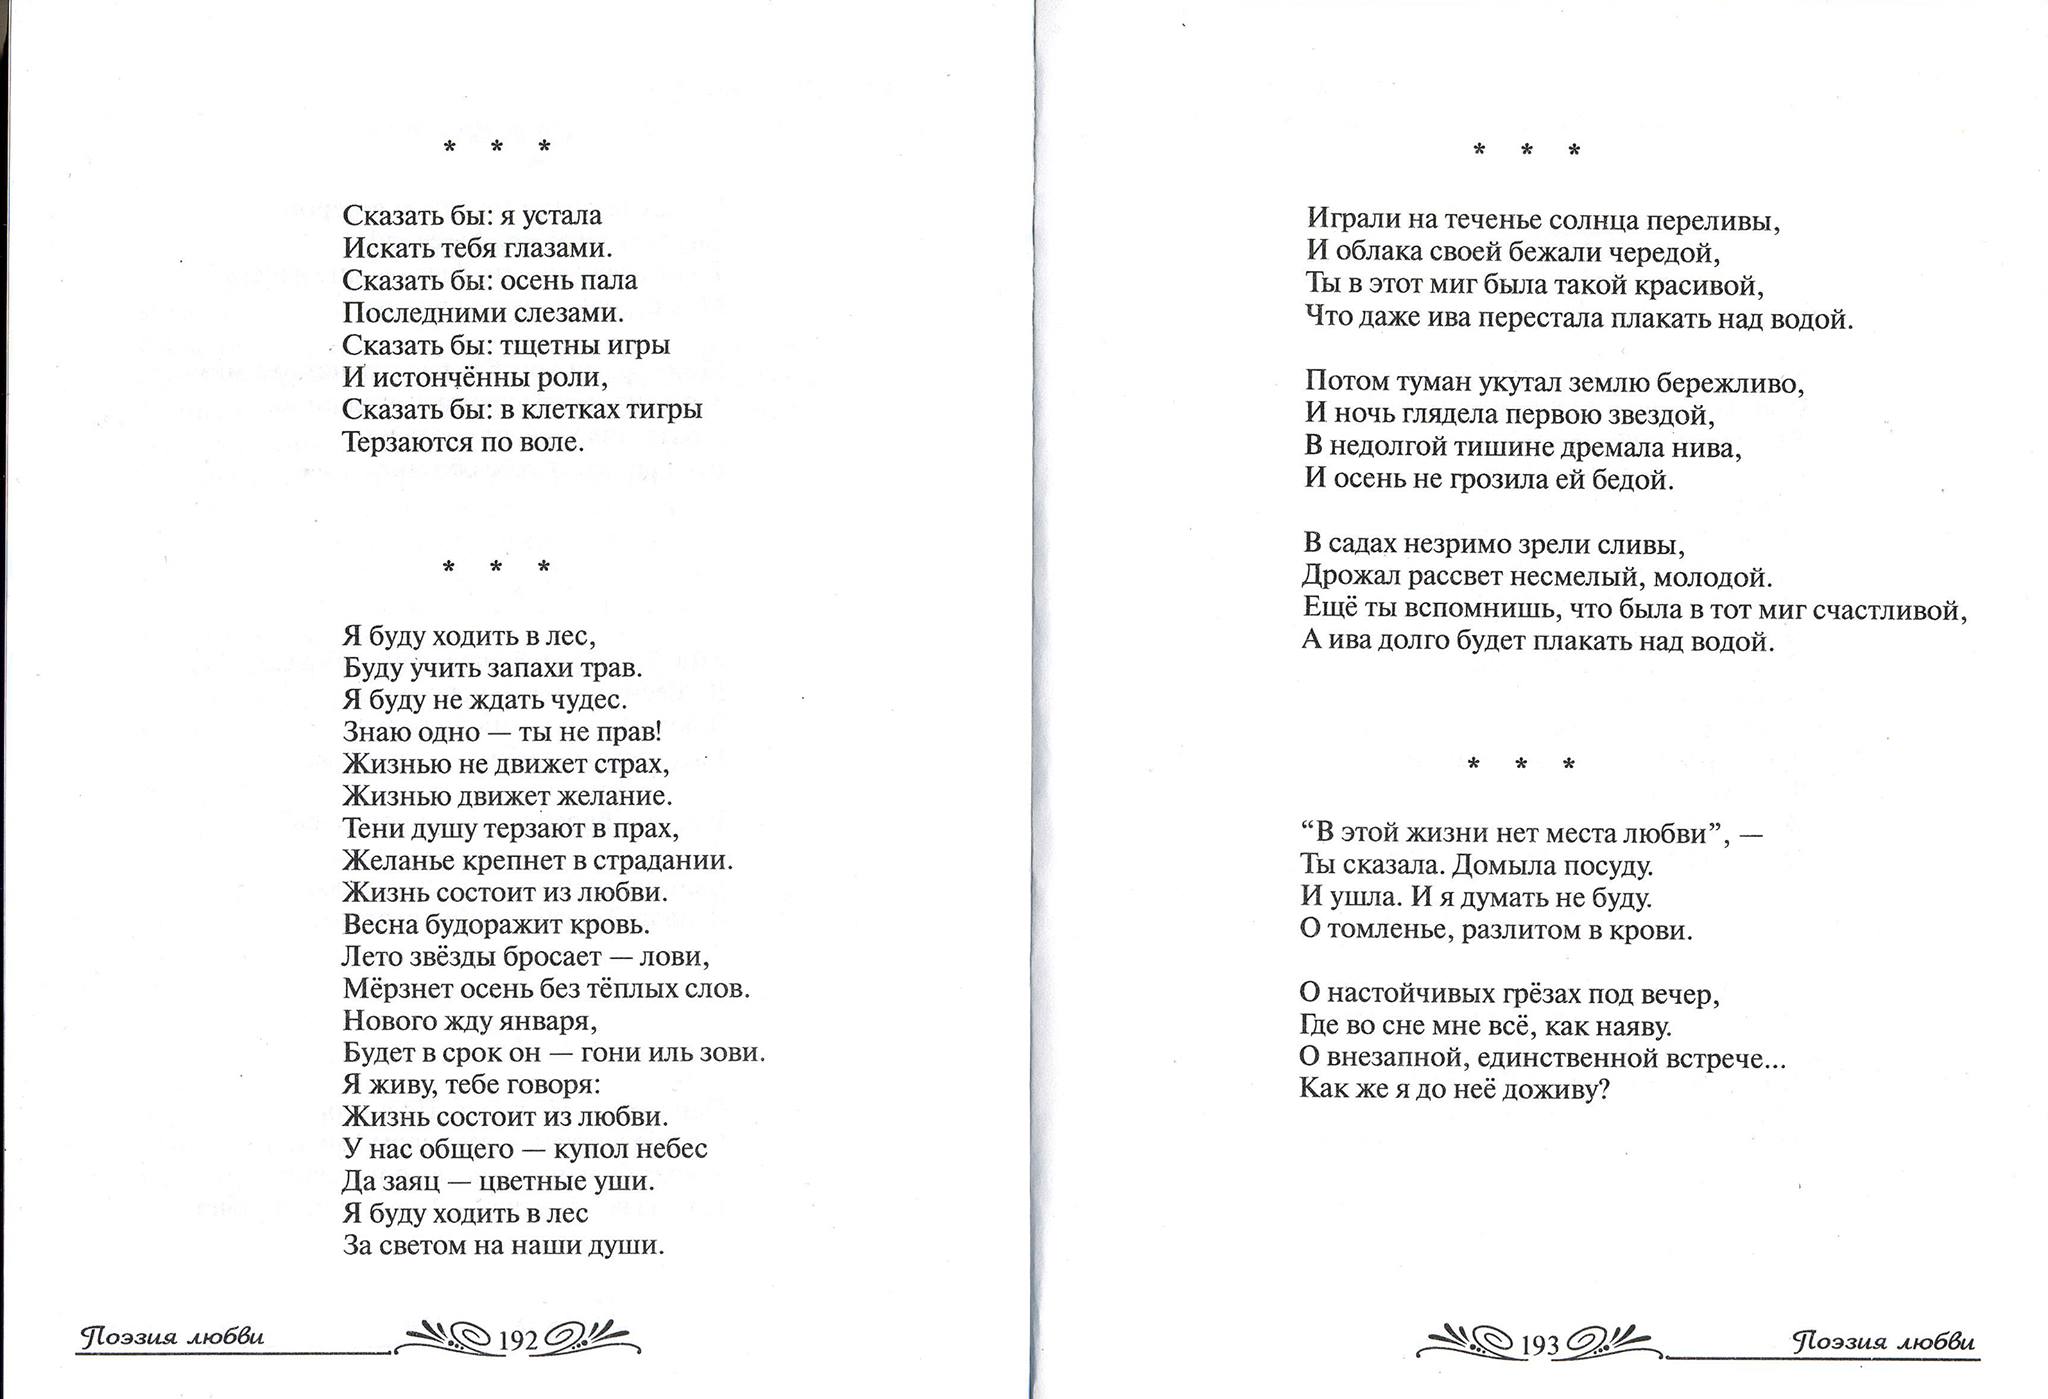 Ирина Шухаева в сборнике Поэзия любви 2004